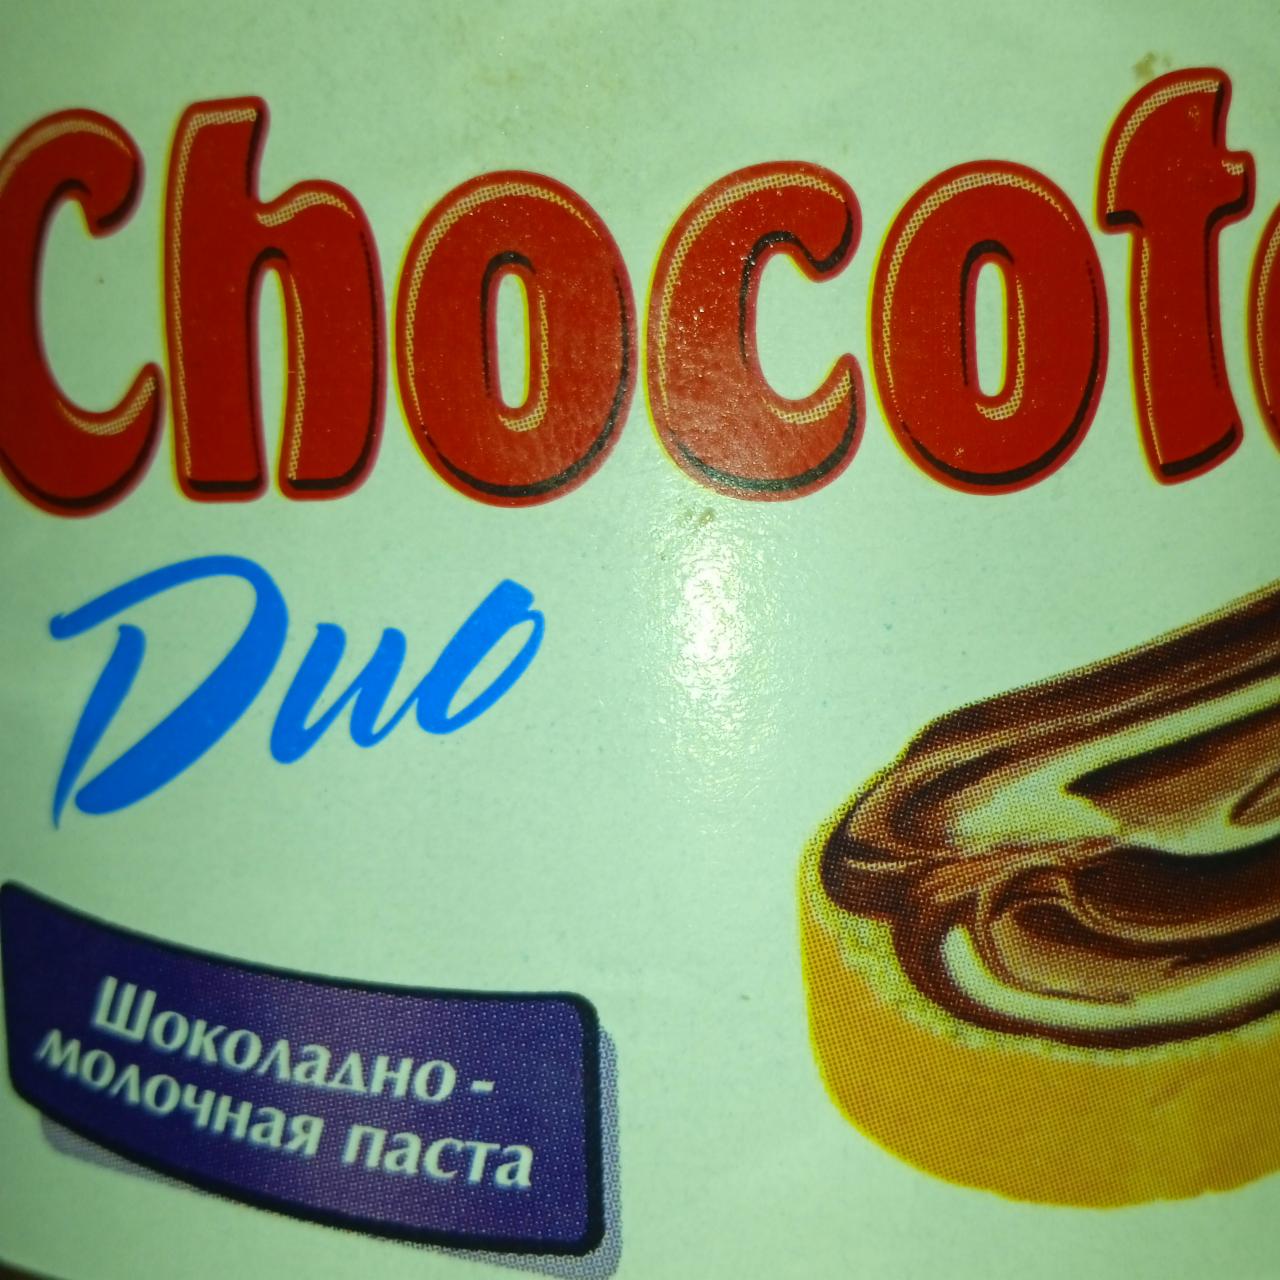 Фото - сладкая паста шоколадная-сливочная дуо чокатела N'Medov